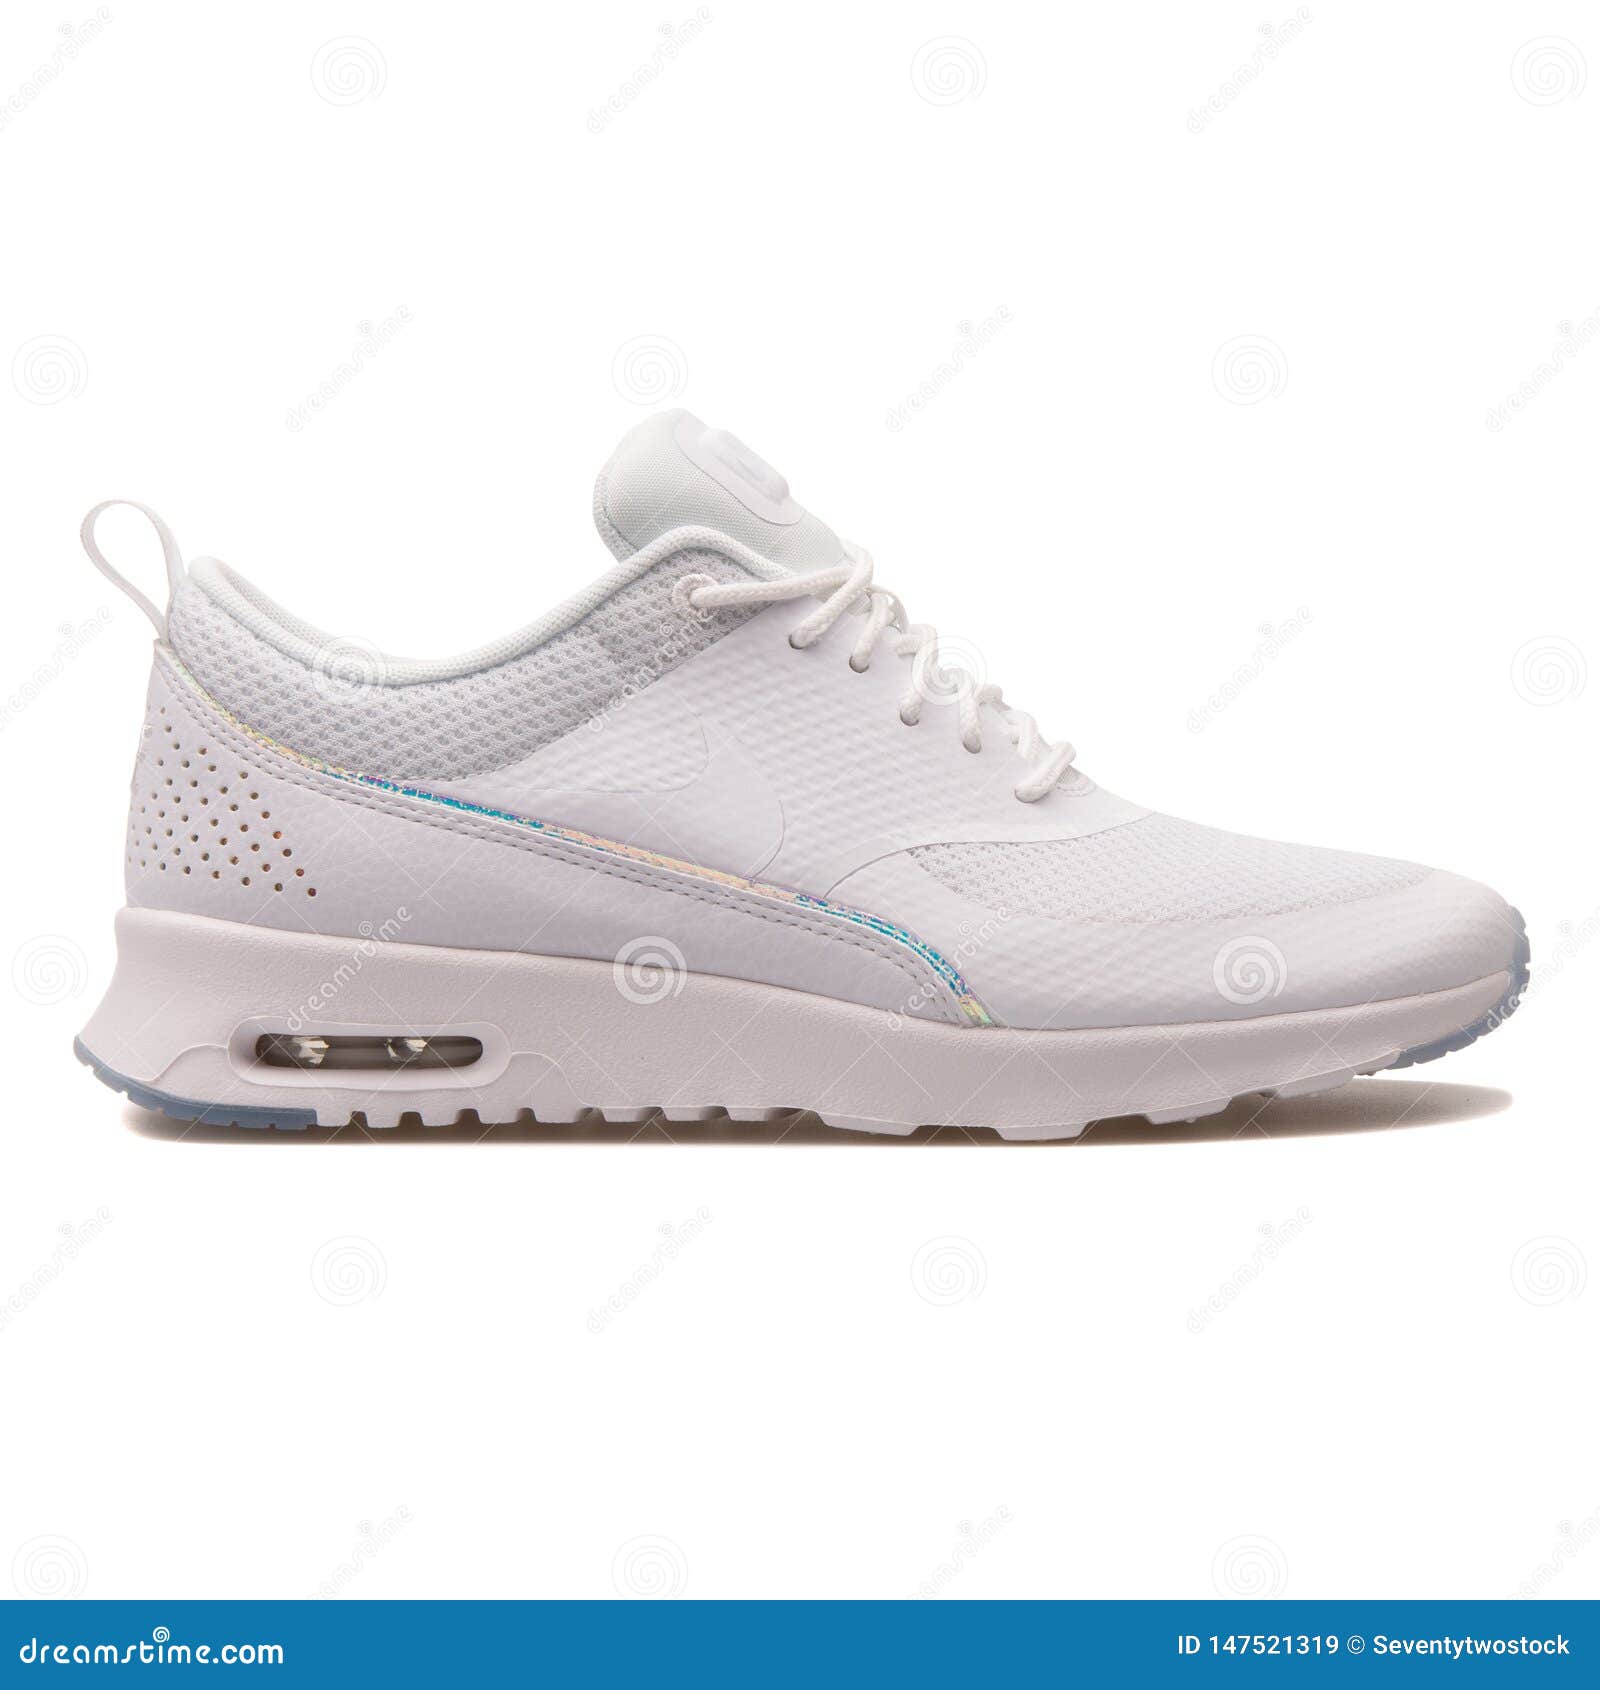 Witte Tennisschoen Van Nike Air Max Premium Redactionele Stock Afbeelding - Image of maximum, leer: 147521319